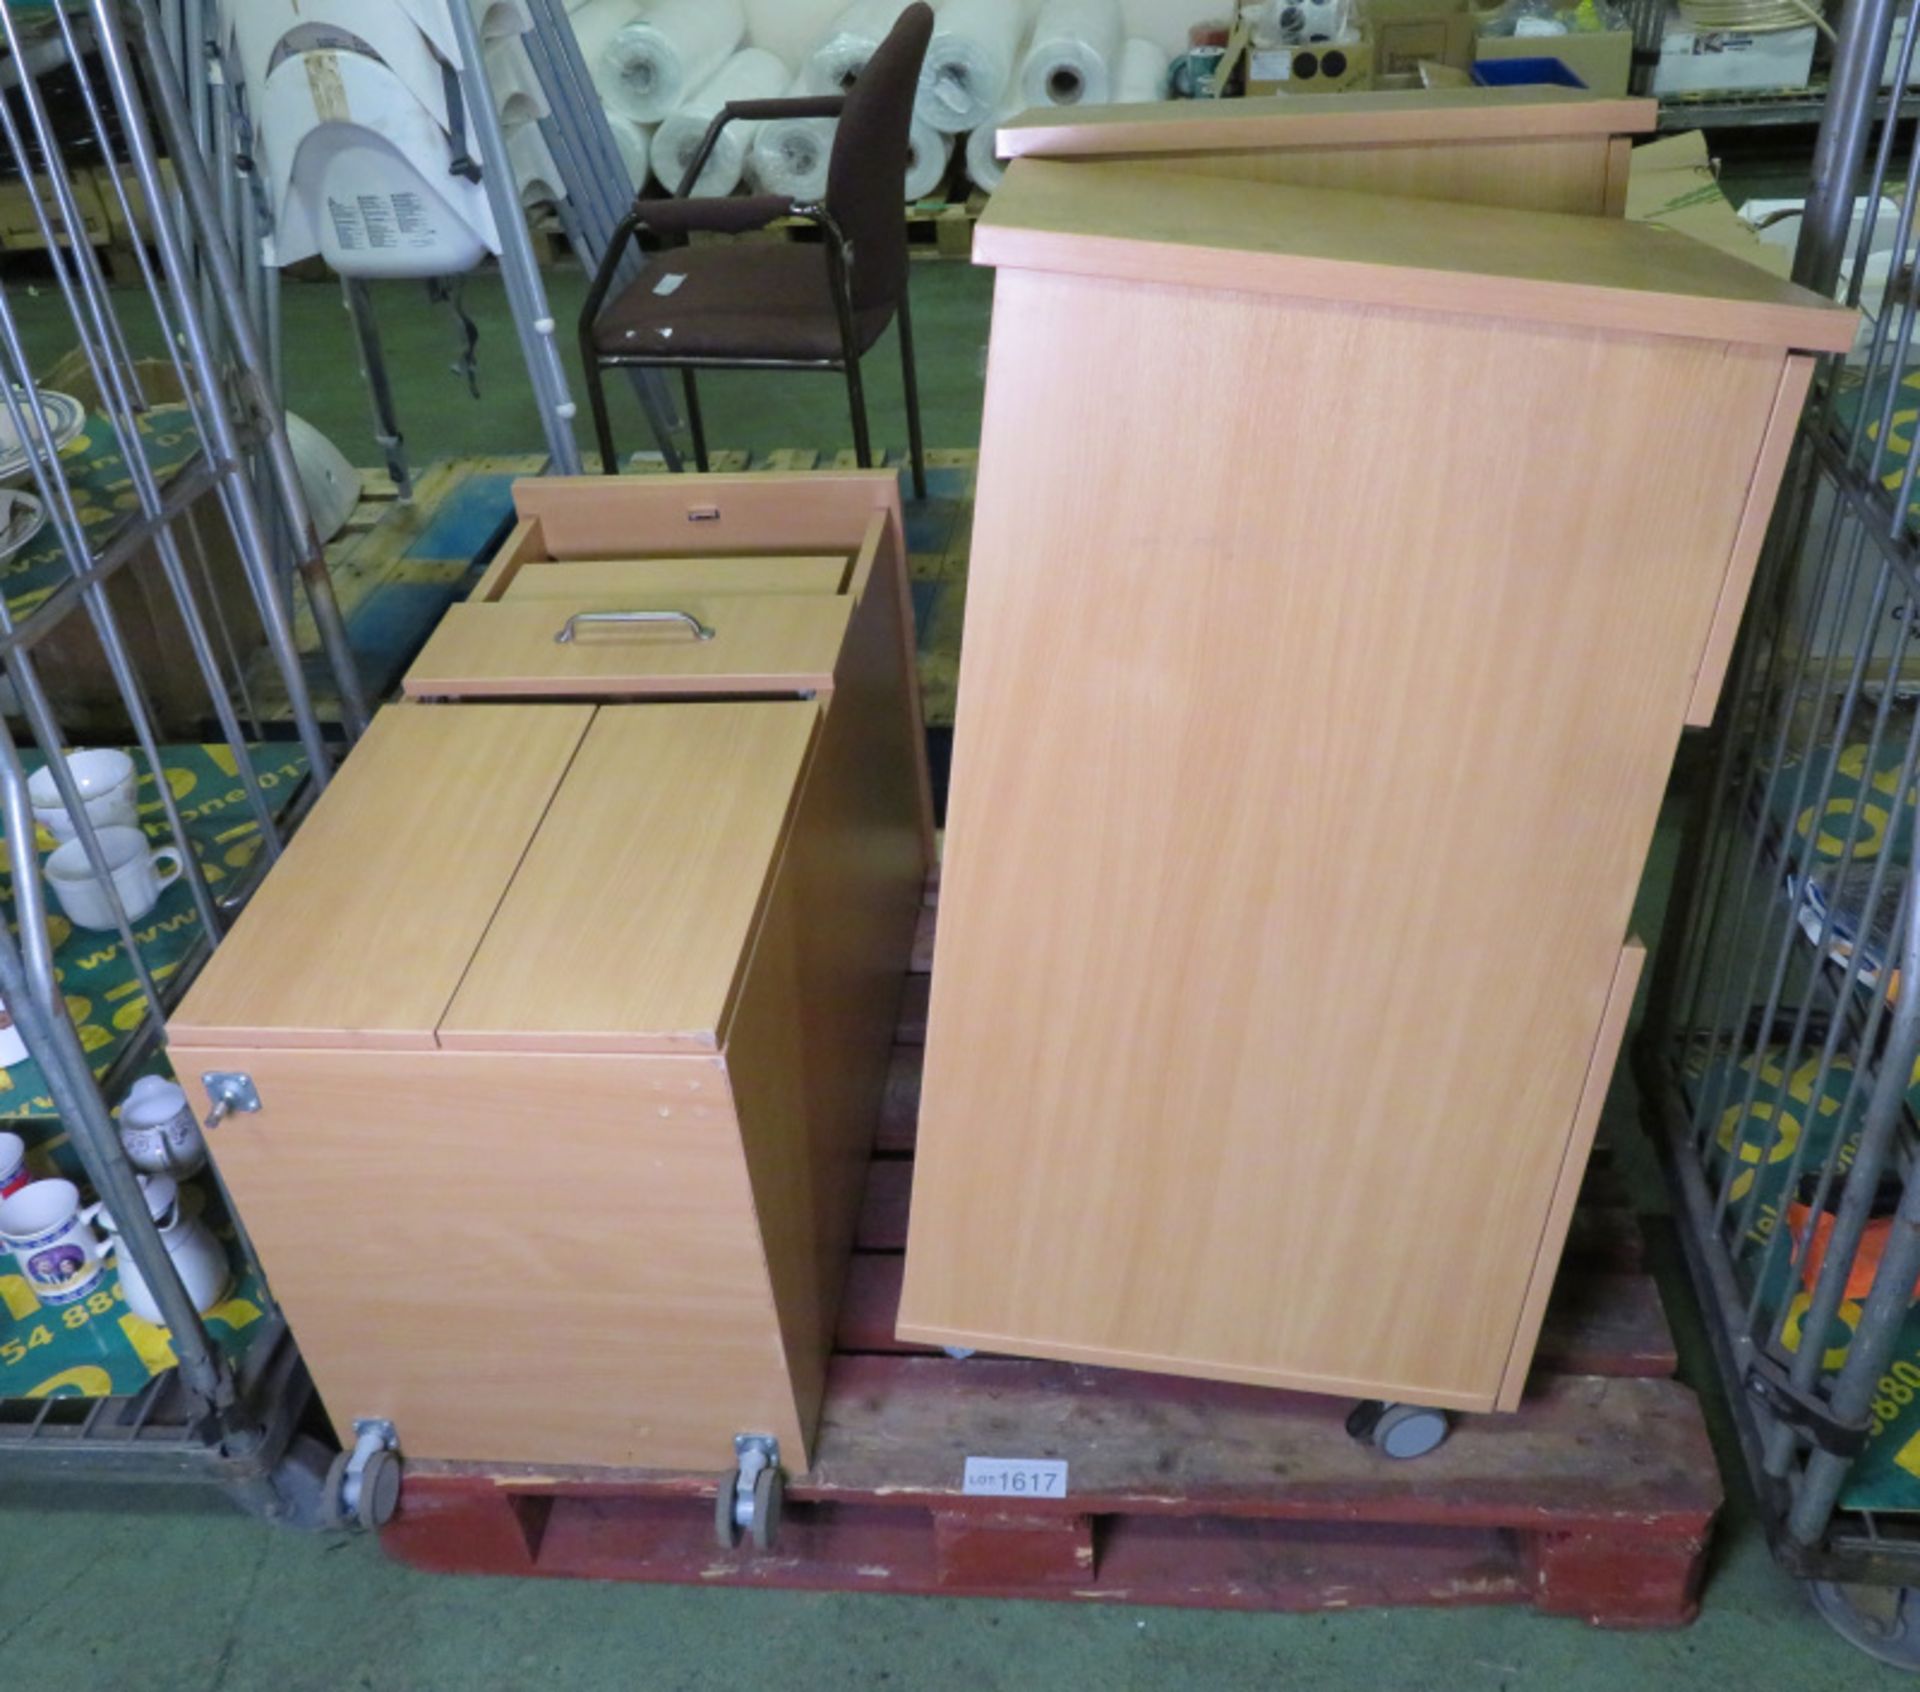 3x Bed Side Cabinets - W 450mm x D 550mm x H 980mm - missing castors